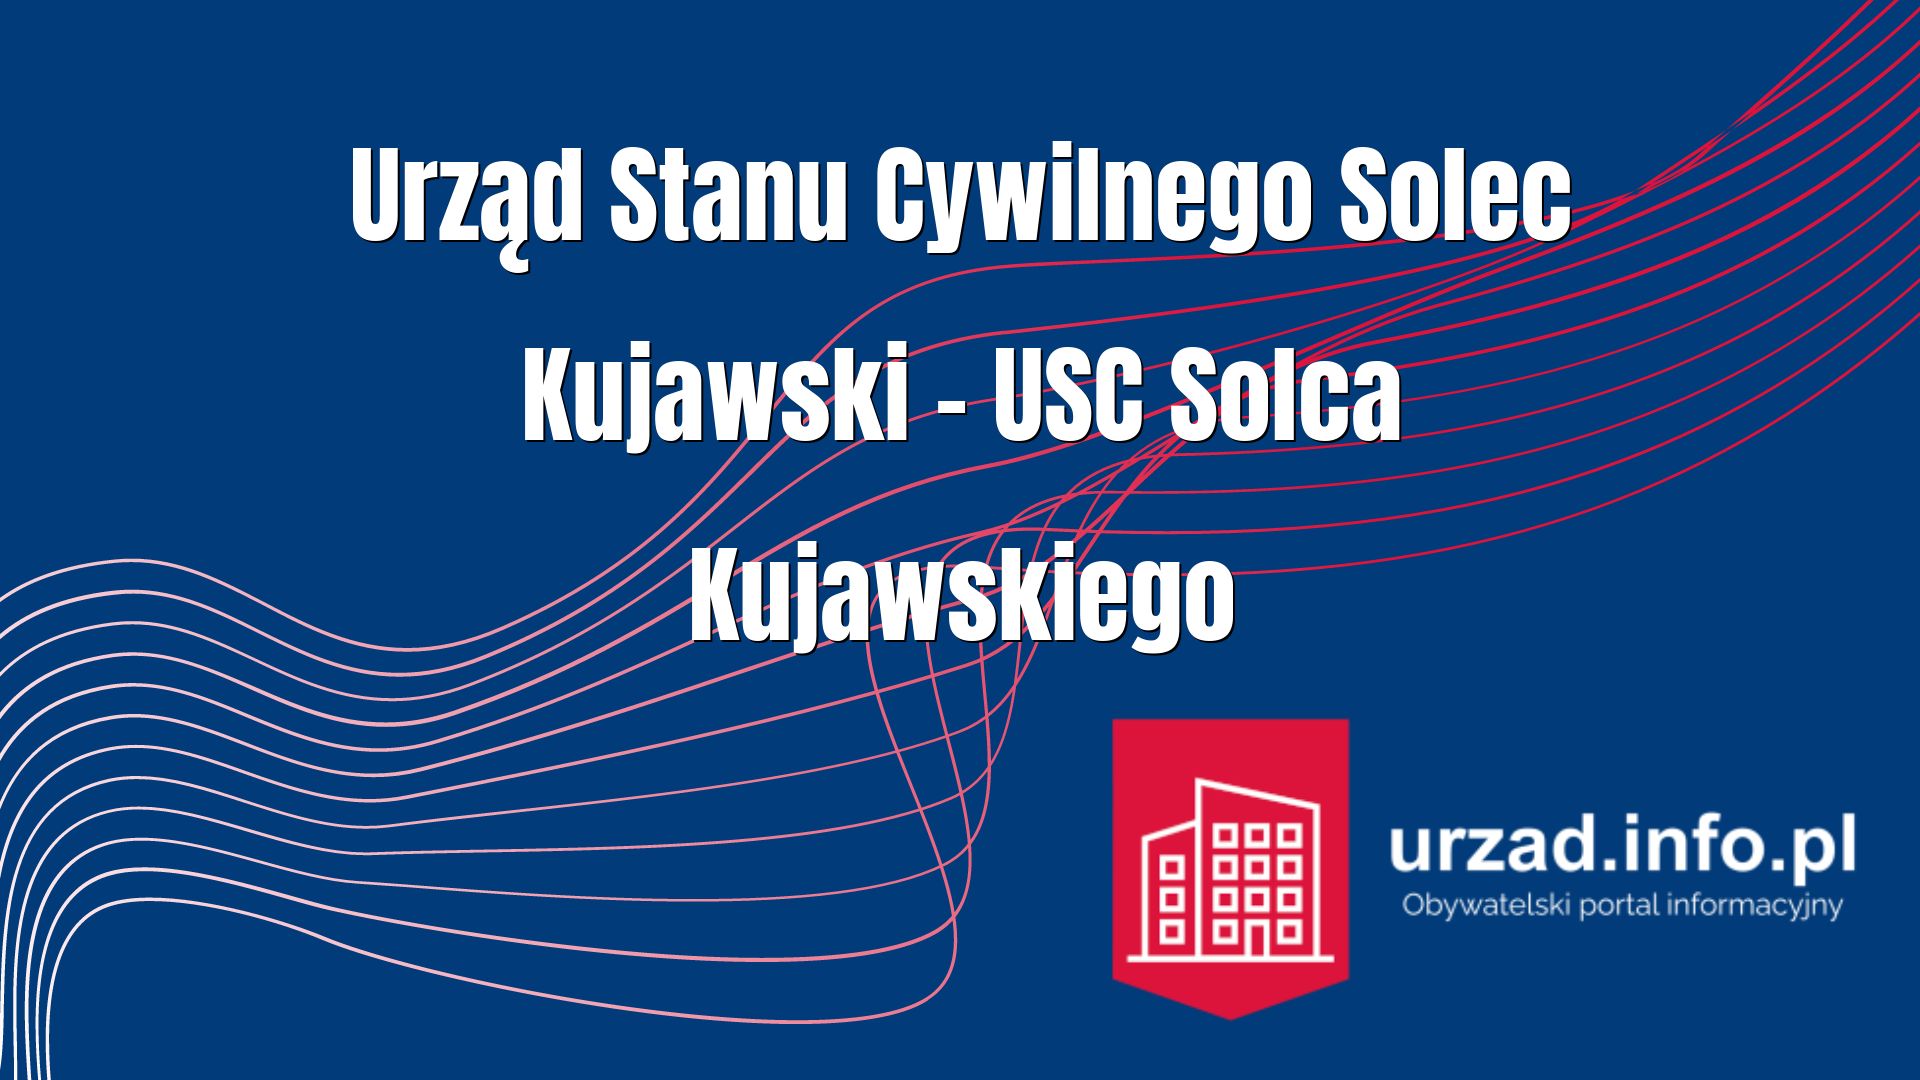 Urząd Stanu Cywilnego Solec Kujawski – USC Solca Kujawskiego